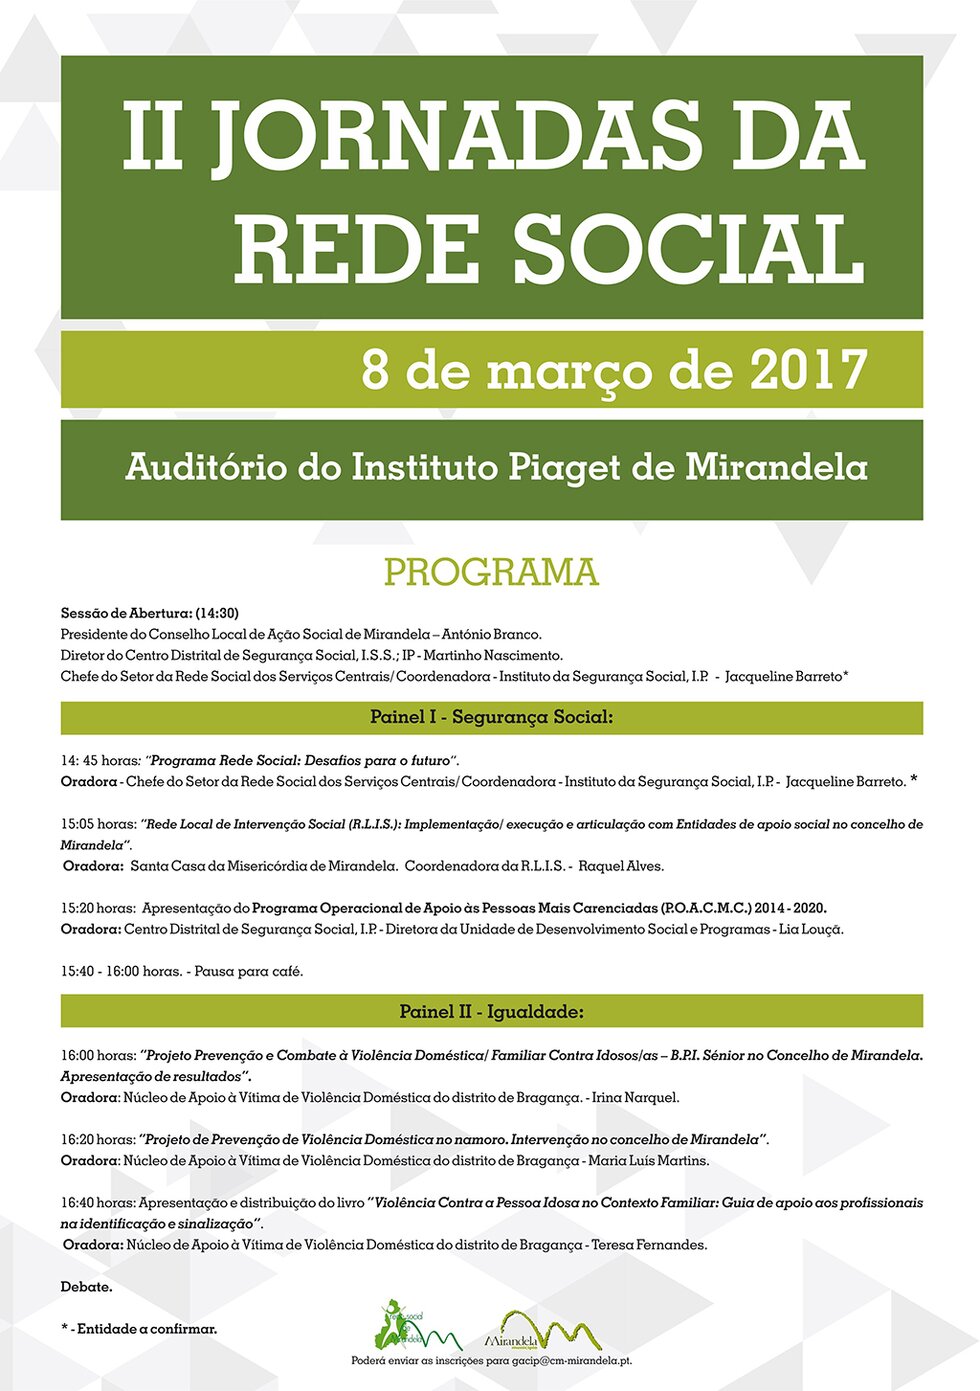 8_MARC_II_jornadas_da_rede_social_2017